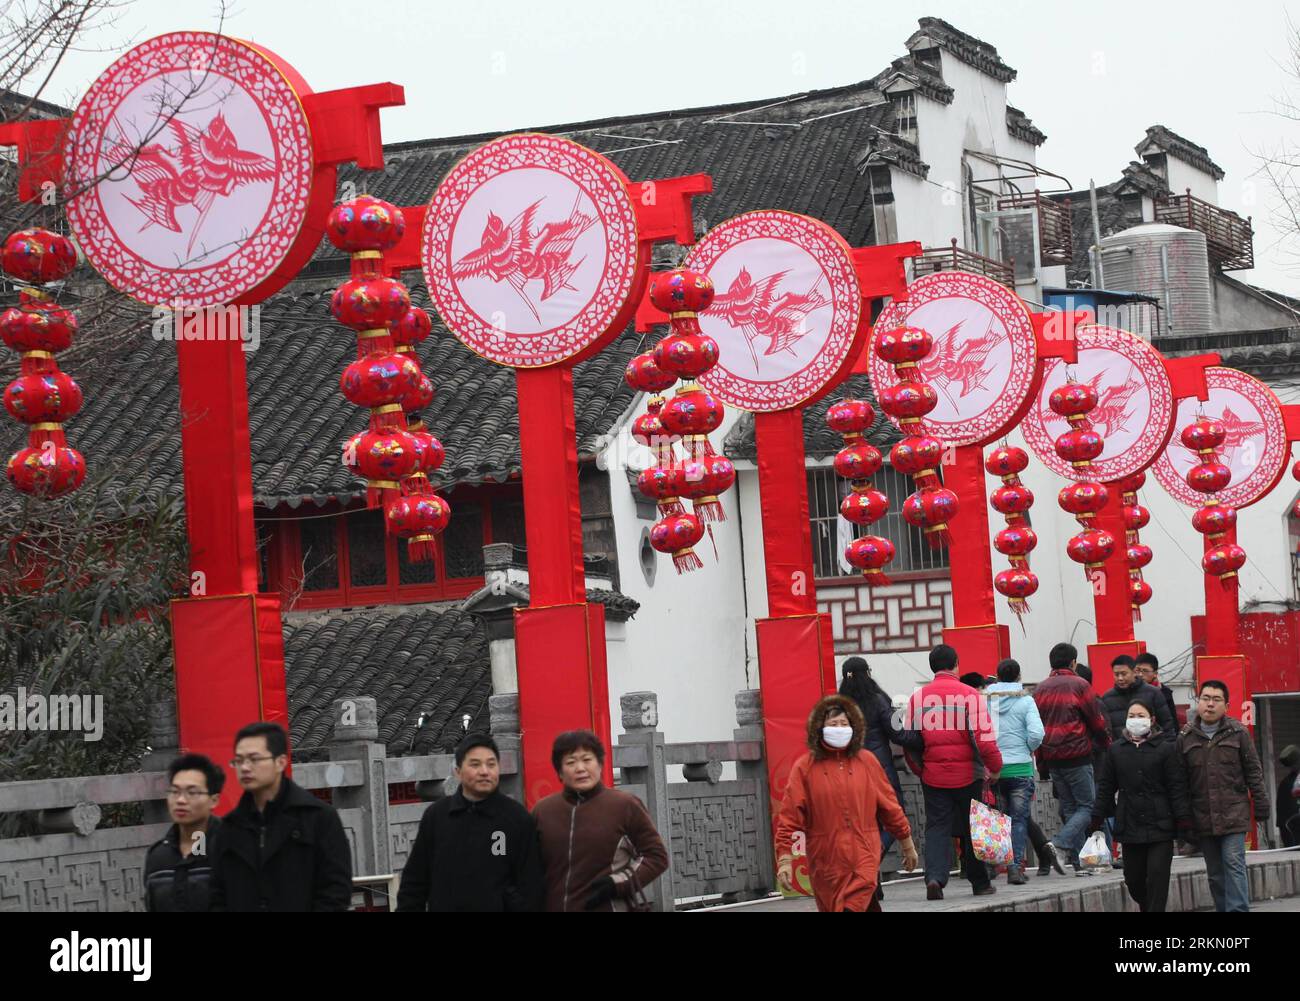 Bildnummer: 56892362 Datum: 16.01.2012 Copyright: imago/Xinhua (120116) -- NANCHINO, 16 gennaio 2012 (Xinhua) -- turisti camminano per le decorazioni del festival al Tempio di Confucio a Nanchino, capitale della provincia di Jiangsu della Cina orientale, 16 gennaio 2012. Più di 100 gruppi luminosi di grandi e medie dimensioni e 400.000 lanterne per la fiera delle lanterne Qinhuai del 2012 sono stati installati per salutare il prossimo Capodanno lunare cinese, che cade il 23 gennaio. (Xinhua/li Wenbao) (cc) CHINA-SPRING FESTIVAL-DECORATION (CN) PUBLICATIONxNOTxINxCHN Gesellschaft Neujahr Impressionen Citydressing Stadtbild xns x0x 2012 quer Foto Stock